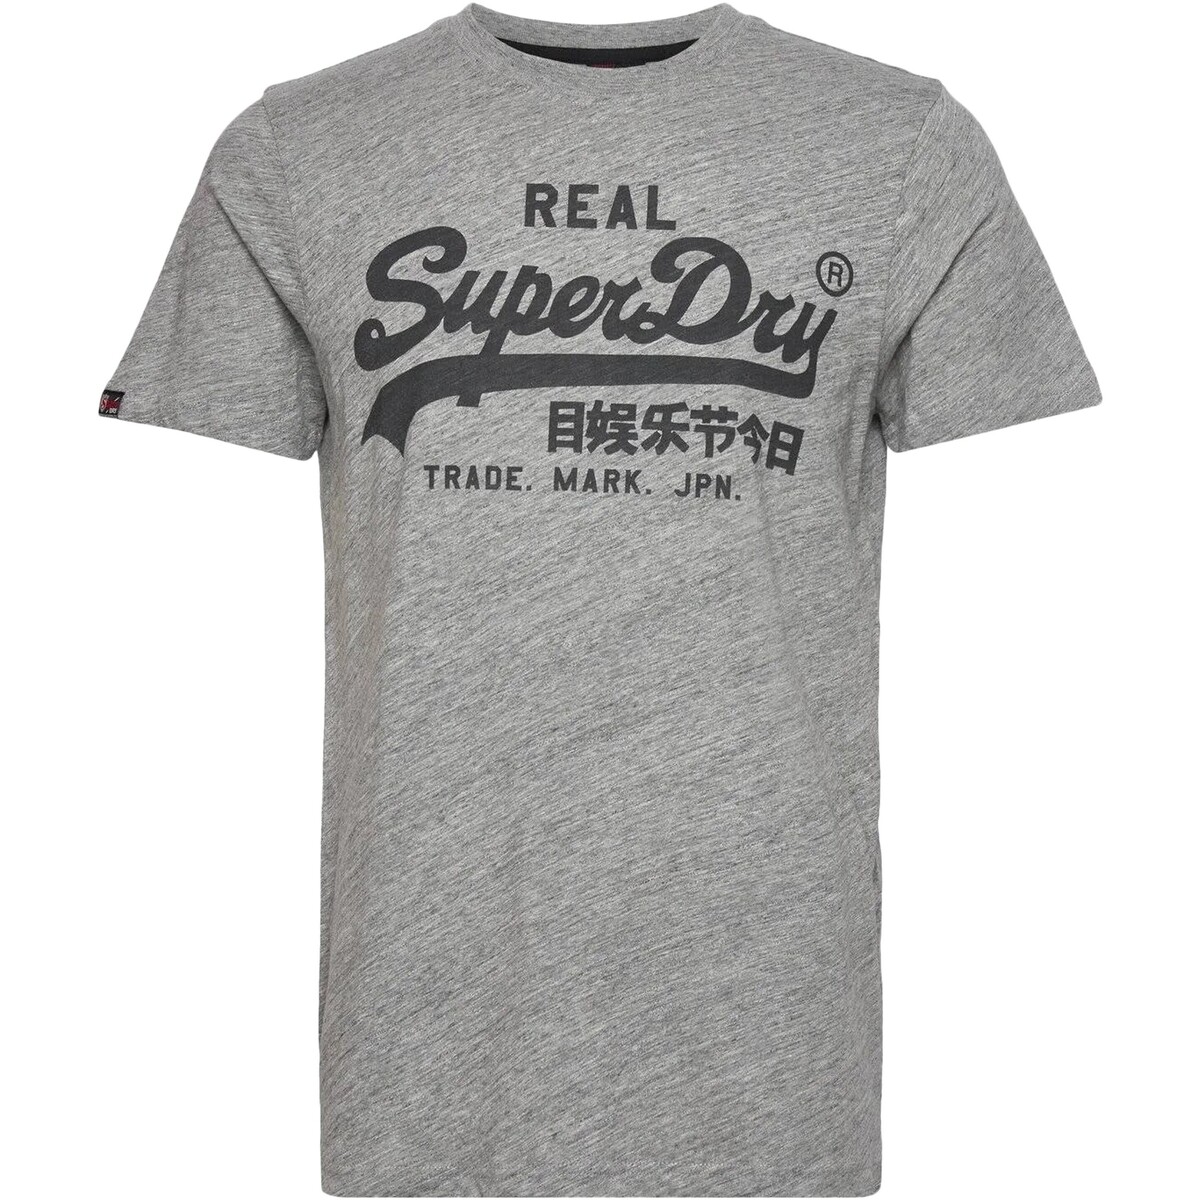 Abbigliamento Uomo T-shirt maniche corte Superdry 210006 Grigio